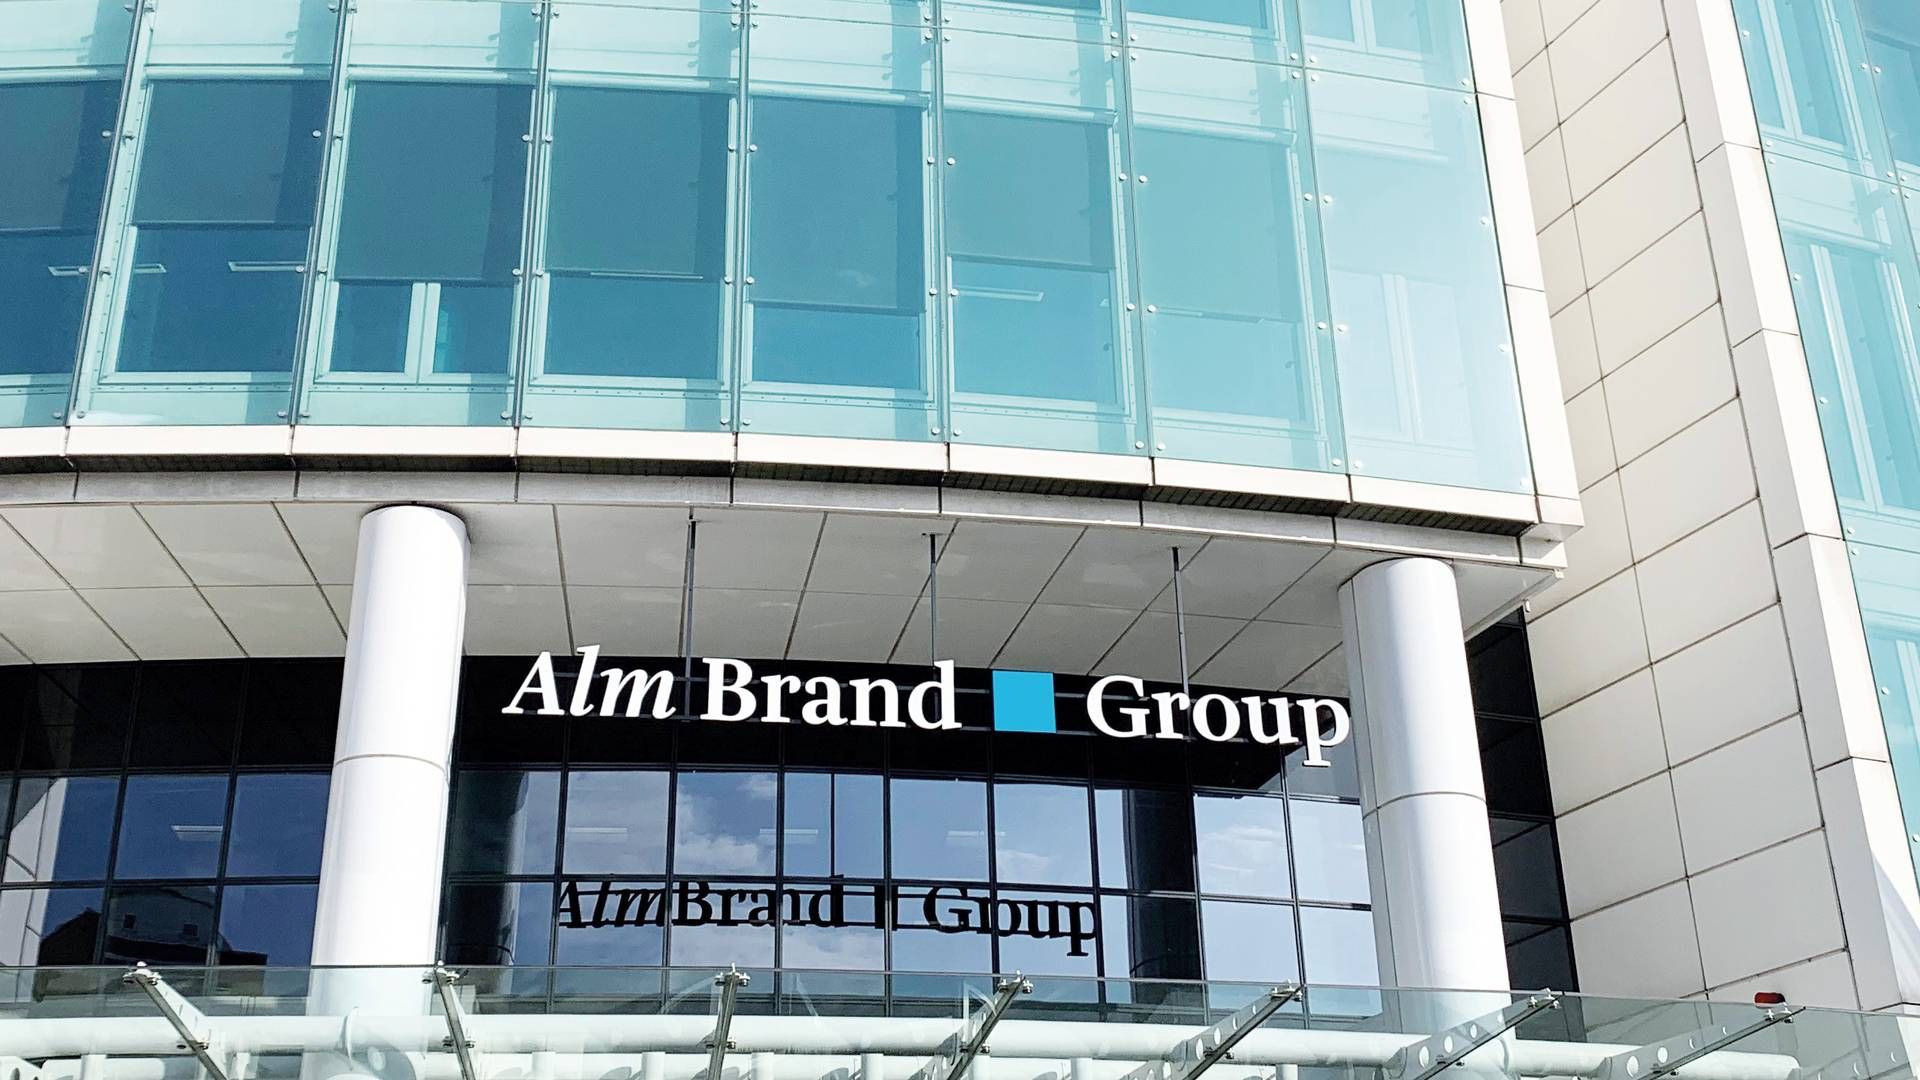 Alm. Brand Group består af Alm. Brand, Codan, Privatsikring og Erhvervssikring. | Foto: Pr